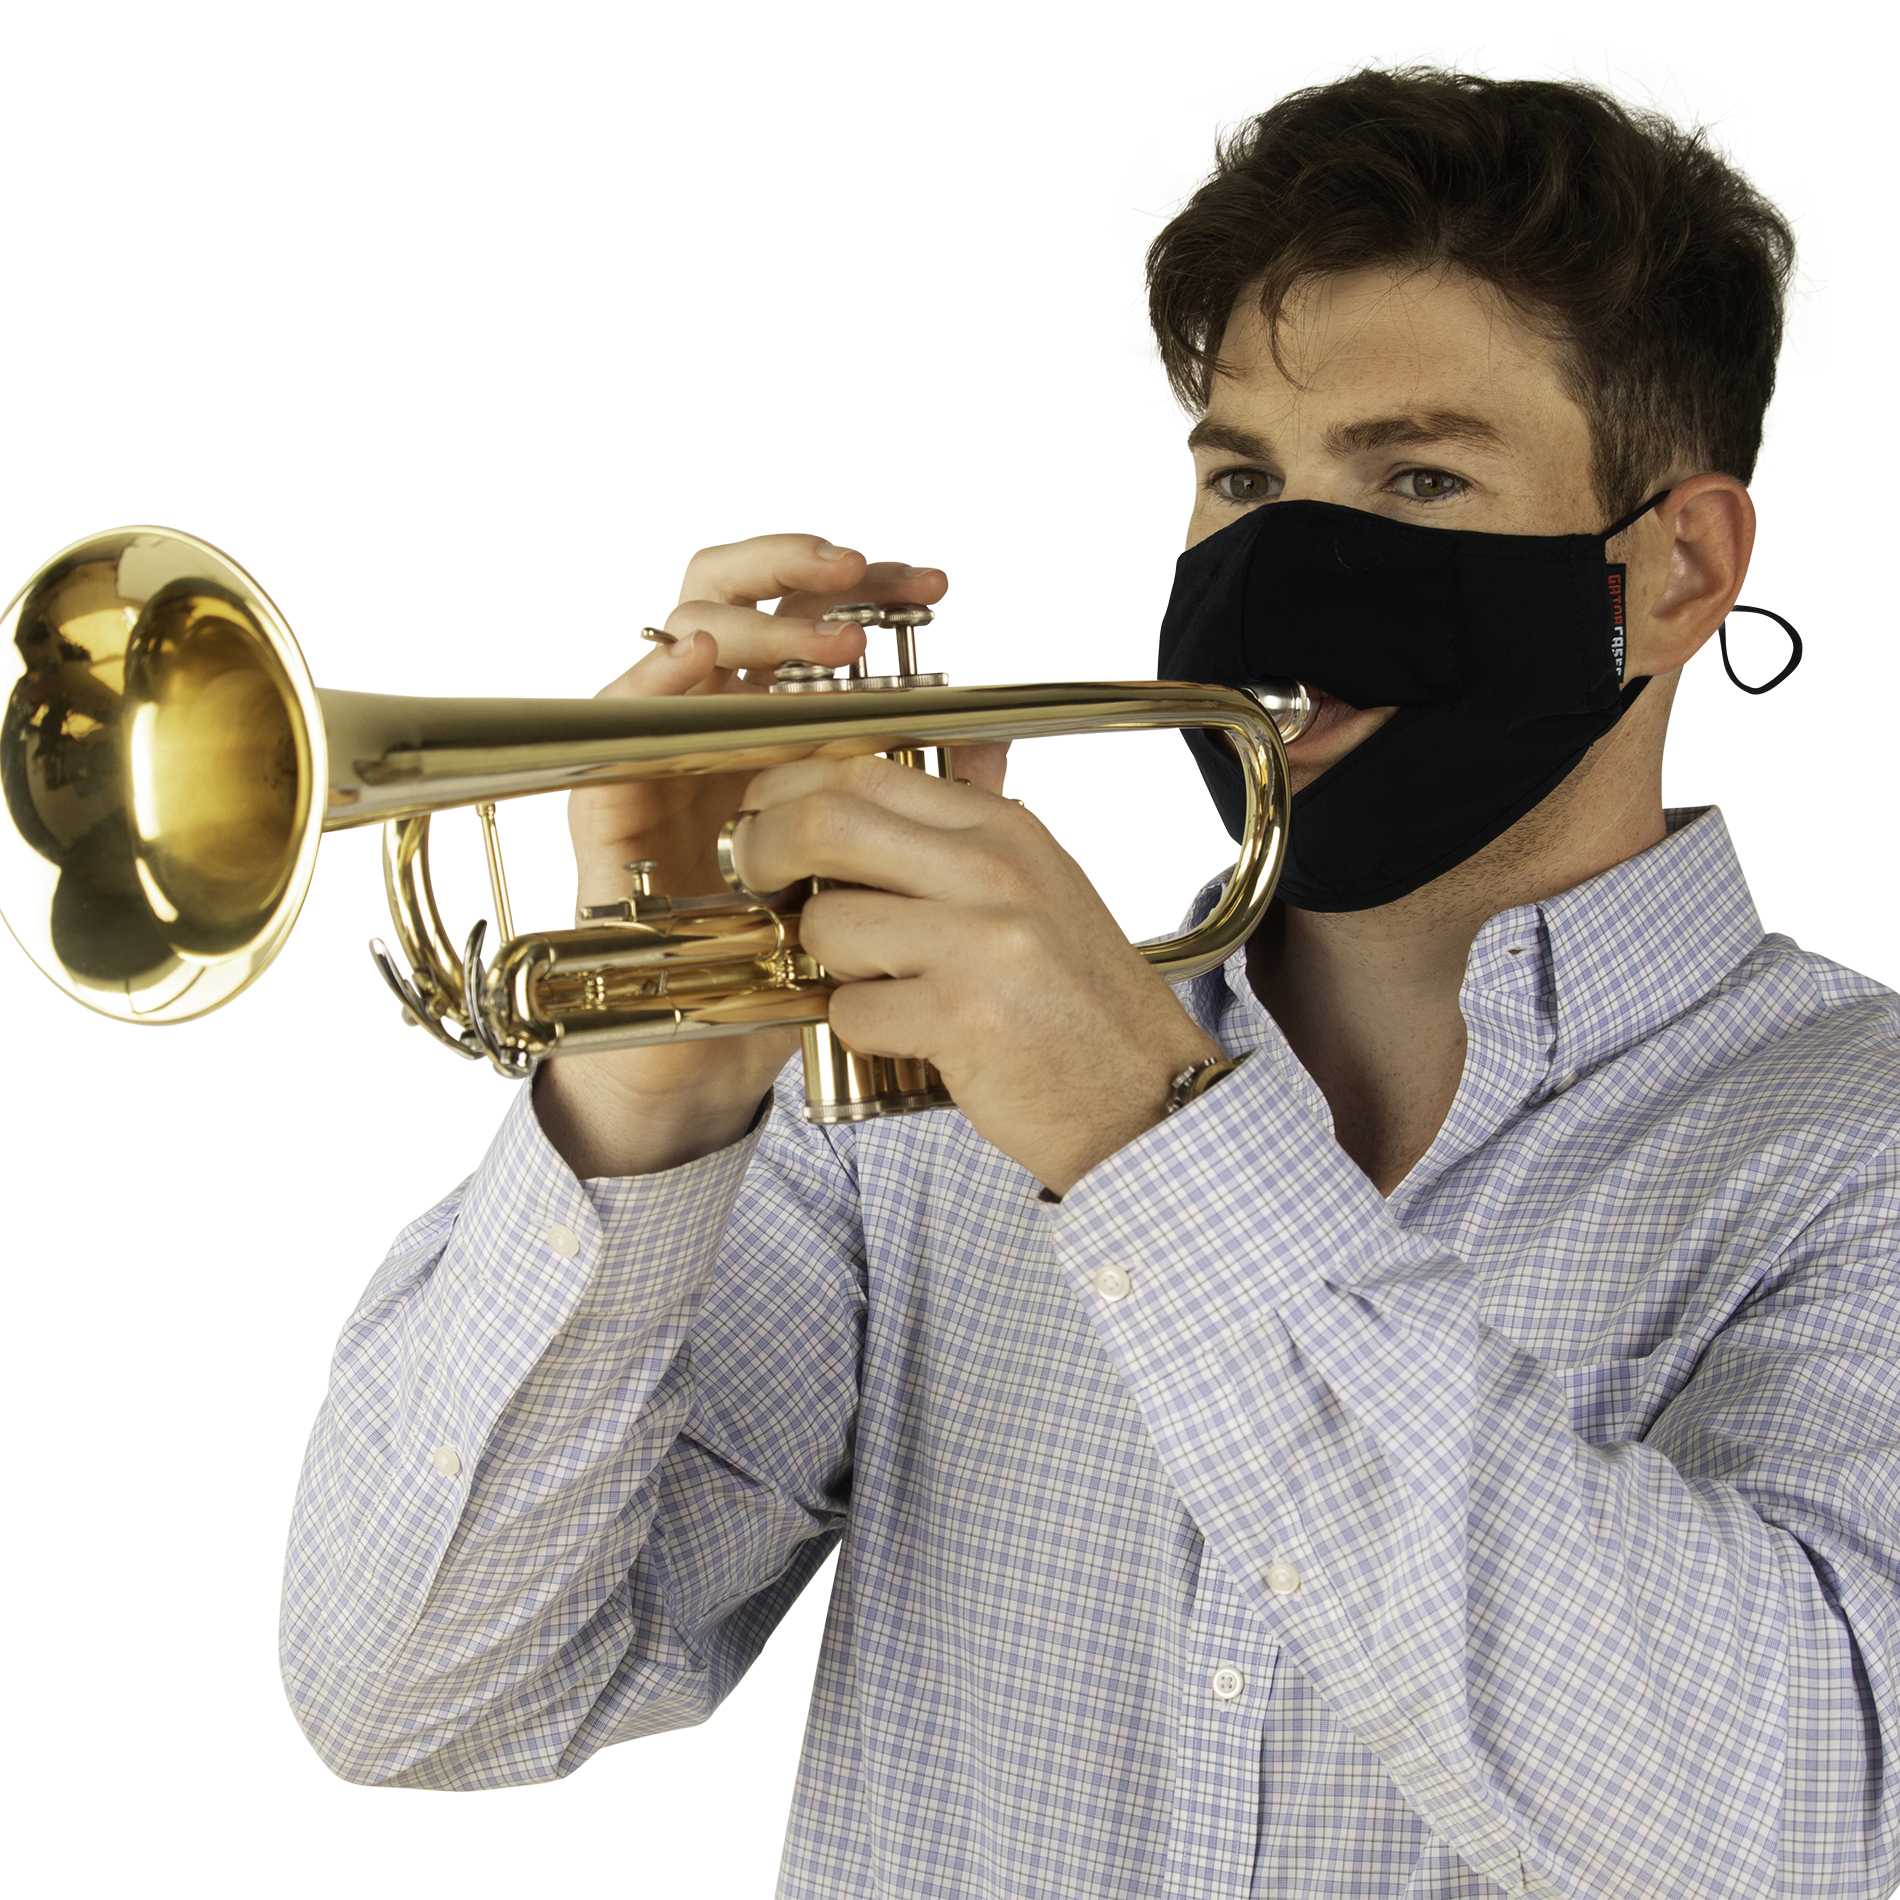 Medium Wind Instrument Face Mask-GBOM-MEDIUMBK